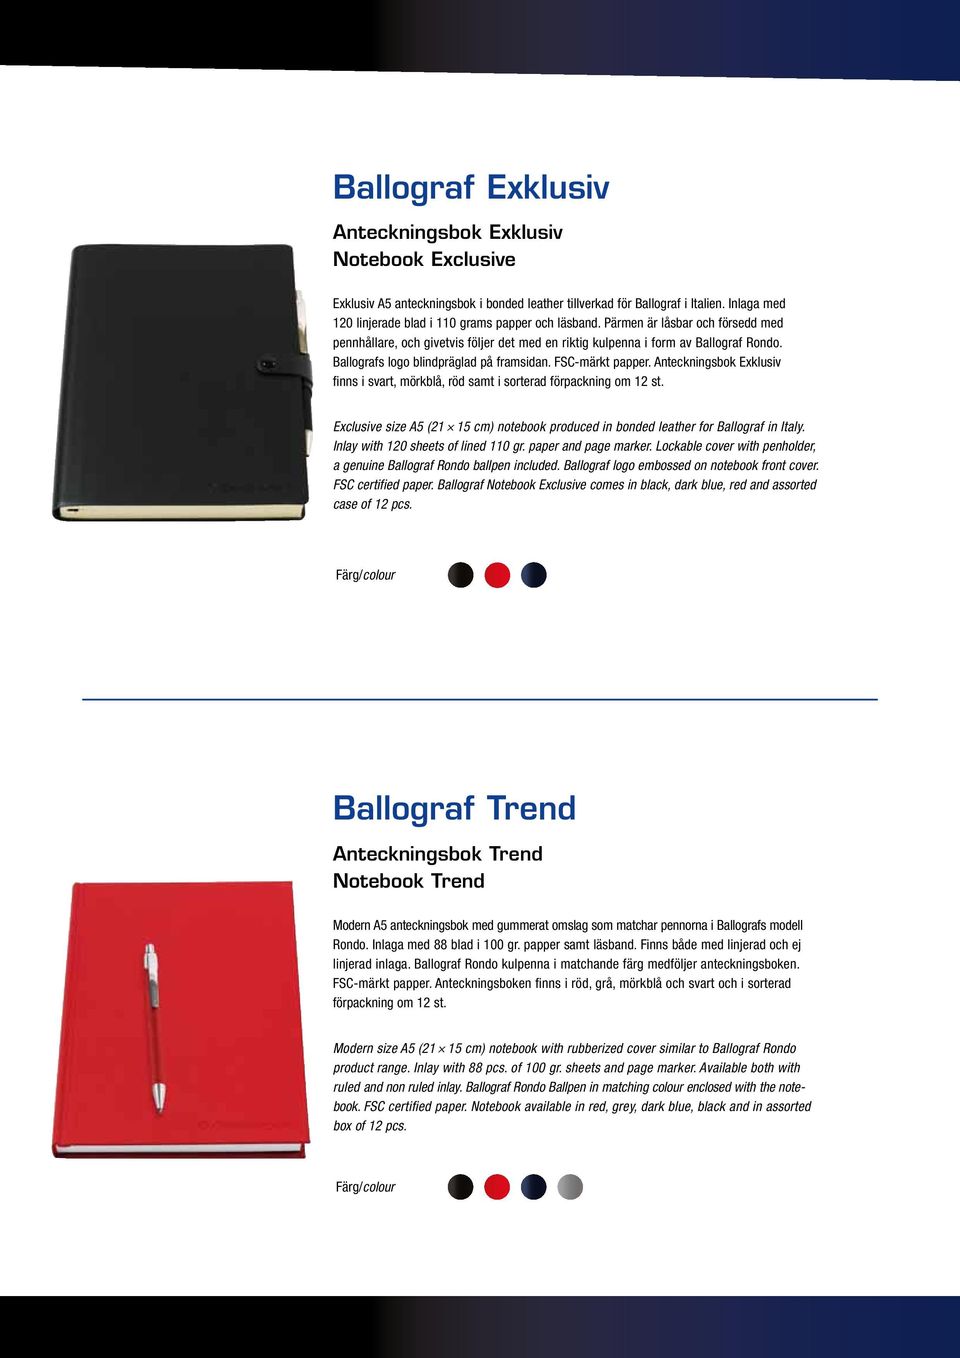 Ballografs logo blindpräglad på framsidan. FSC-märkt papper. Anteckningsbok Exklusiv finns i svart, mörkblå, röd samt i sorterad förpackning om 12 st.